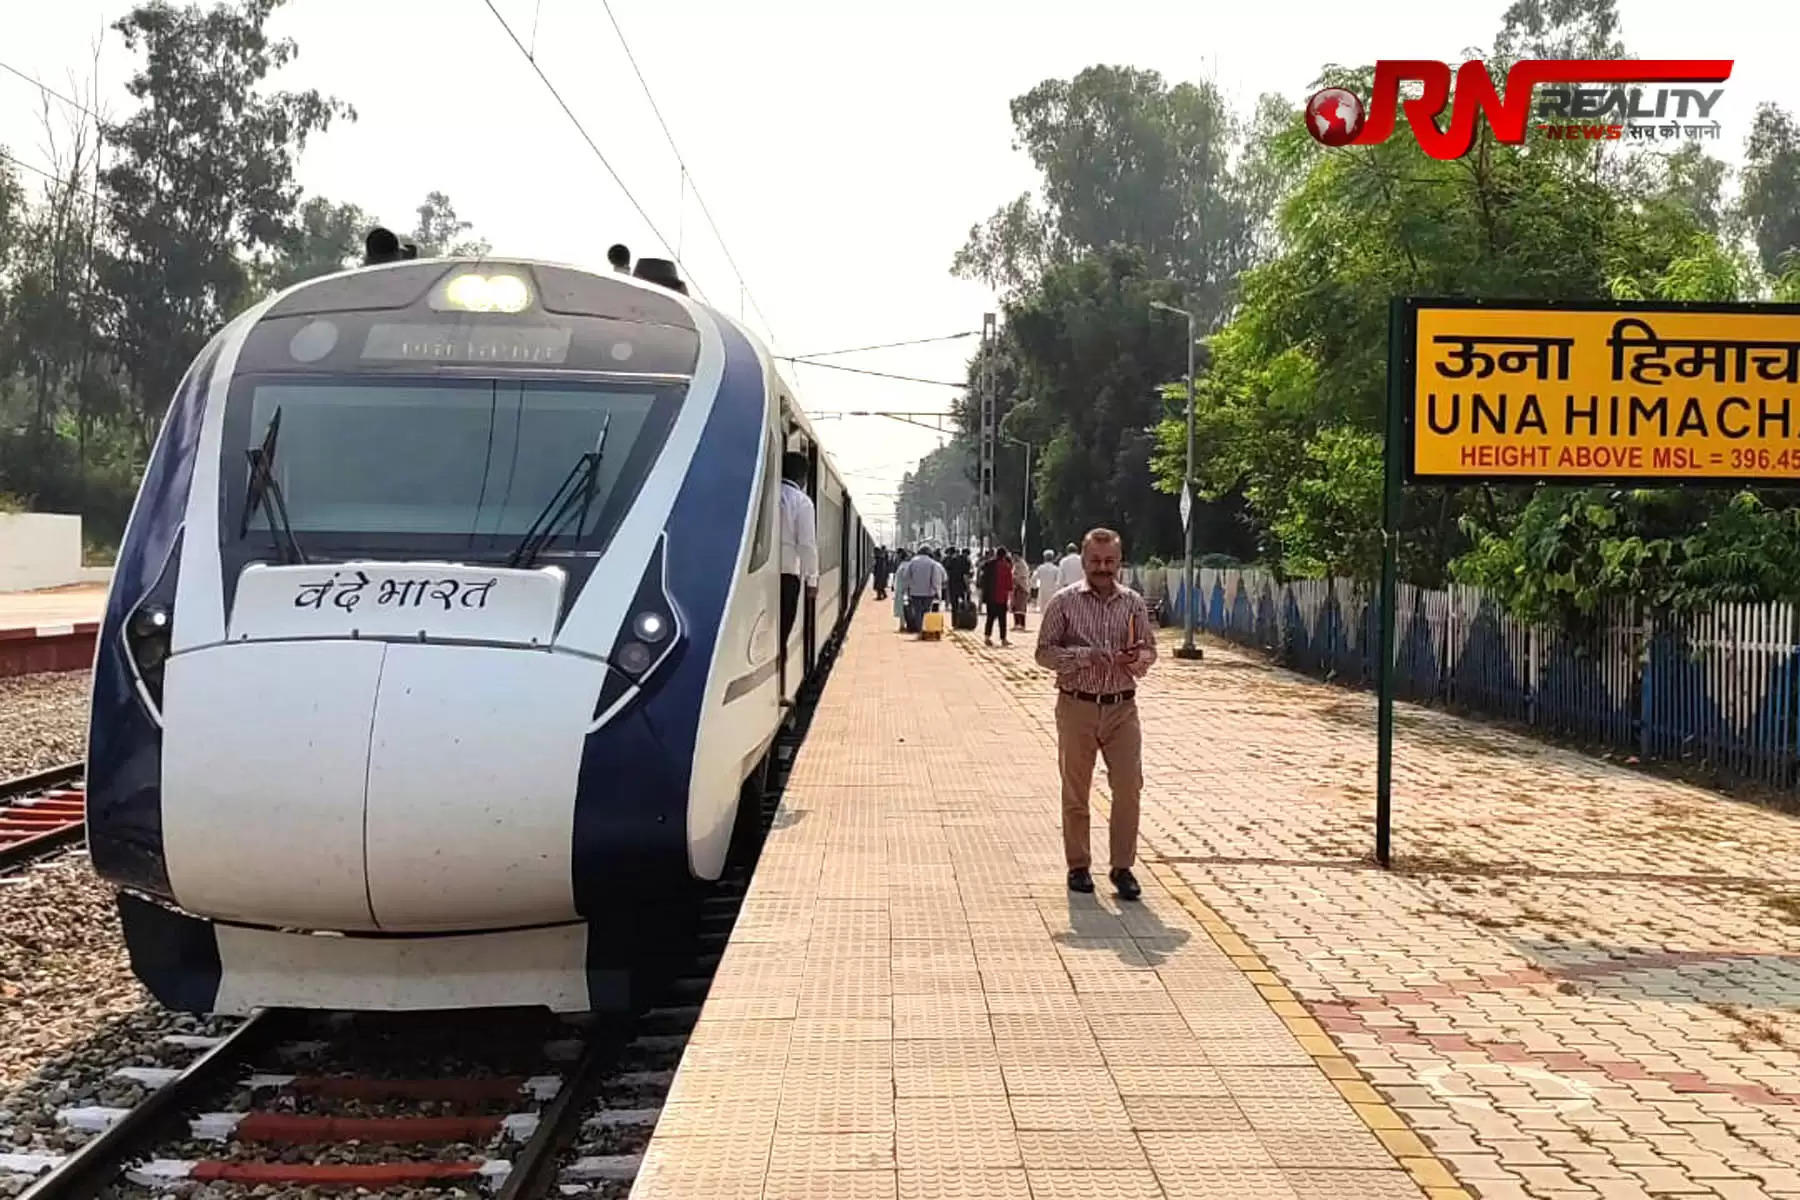 हिमाचल प्रदेश के लिए वंदे भारत एक्सप्रेस का संचालन शुरू हो गया है। बुधवार को देश की चौथी सेमी हाई स्पीड़ वंदे भारत एक्सप्रेस यात्रियों को लेकर ऊना के अंब-अंदौरा रेलवे स्टेशन पर पहुंची। वंदे भारत के माध्यम से नई दिल्ली से बड़ी संख्या में यात्री ऊना और अंब-अंदौरा रेलवे स्टेशन पर पहुंचे। इस दौरान सैकड़ों लोग अंब में वंदे भारत एक्सप्रेस को देखने के लिए भी पहुंचे थे।        नई दिल्ली से हिमाचल या फिर हिमाचल से दिल्ली जाने वाले यात्री अब सेमी हाई स्पीड वंदे भारत एक्सप्रेस (Vande Bharat Express) ट्रेन के सफर का आनंद उठा सकेंगे। 19 अक्तूबर से यह ट्रेन अंब-अंदौरा से दिल्ली के बीच नियमित तौर पर चलना शुरू हो गया। शुक्रवार को छोड़कर सप्ताह के बाकी 6 दिन यह ट्रेन चलेगी। बता दें कि पीएम नरेंद्र मोदी ने 13 अक्टूबर को इस ट्रेन को हरी झंडी दिखाई थी। 